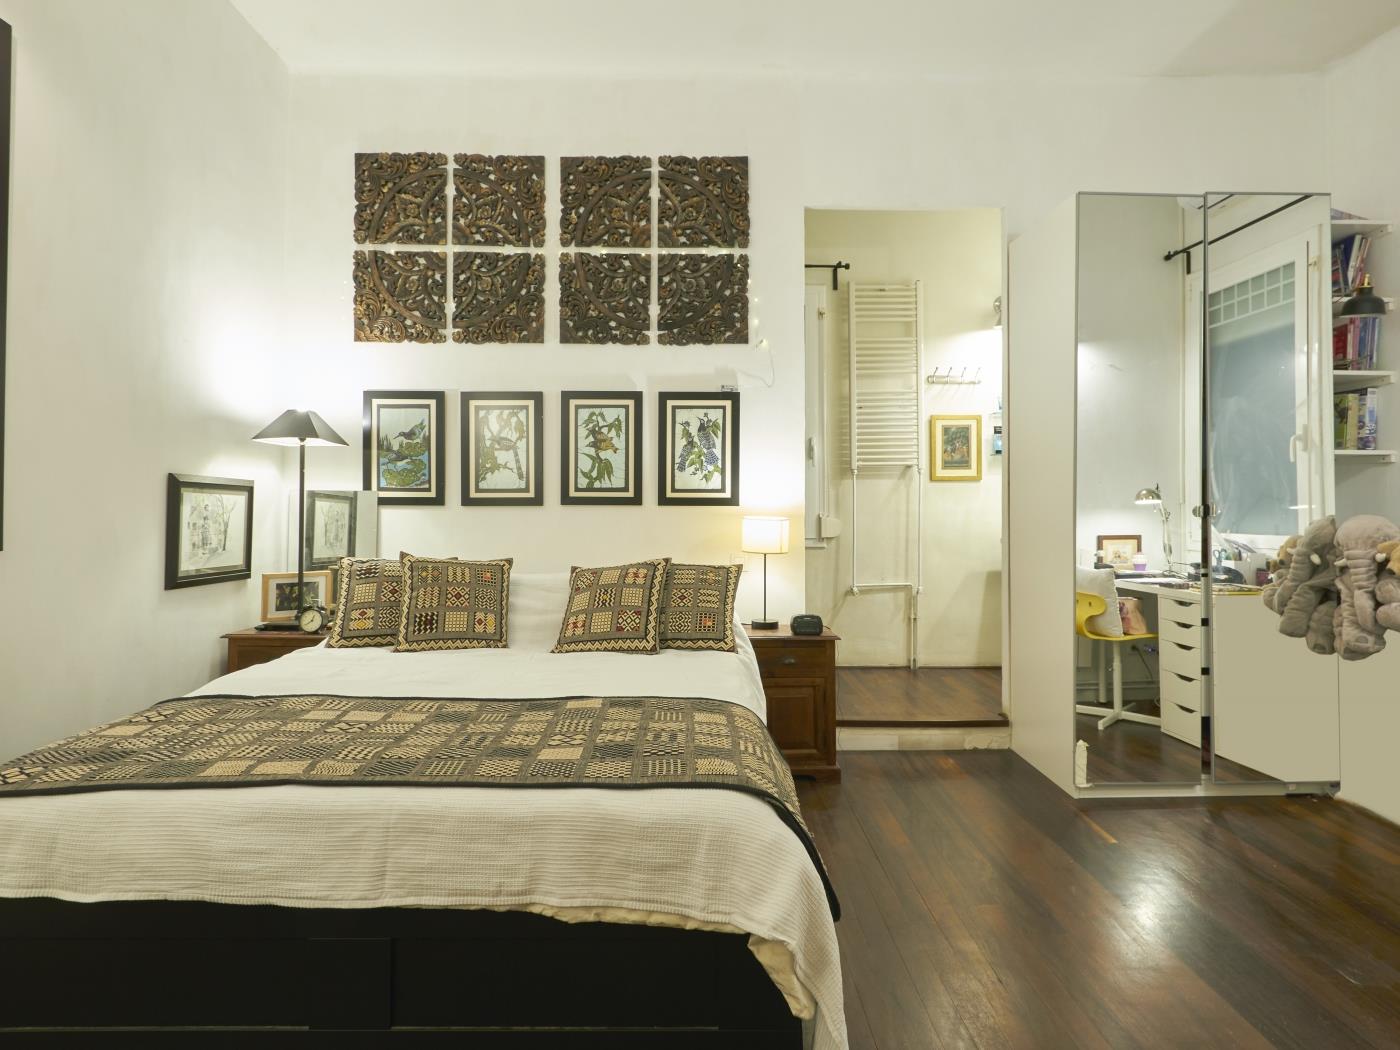 EN VENTA: Luminoso apartamento con terraza en l'Eixample - Precio: 749.000 € - My Space Barcelona Apartamentos